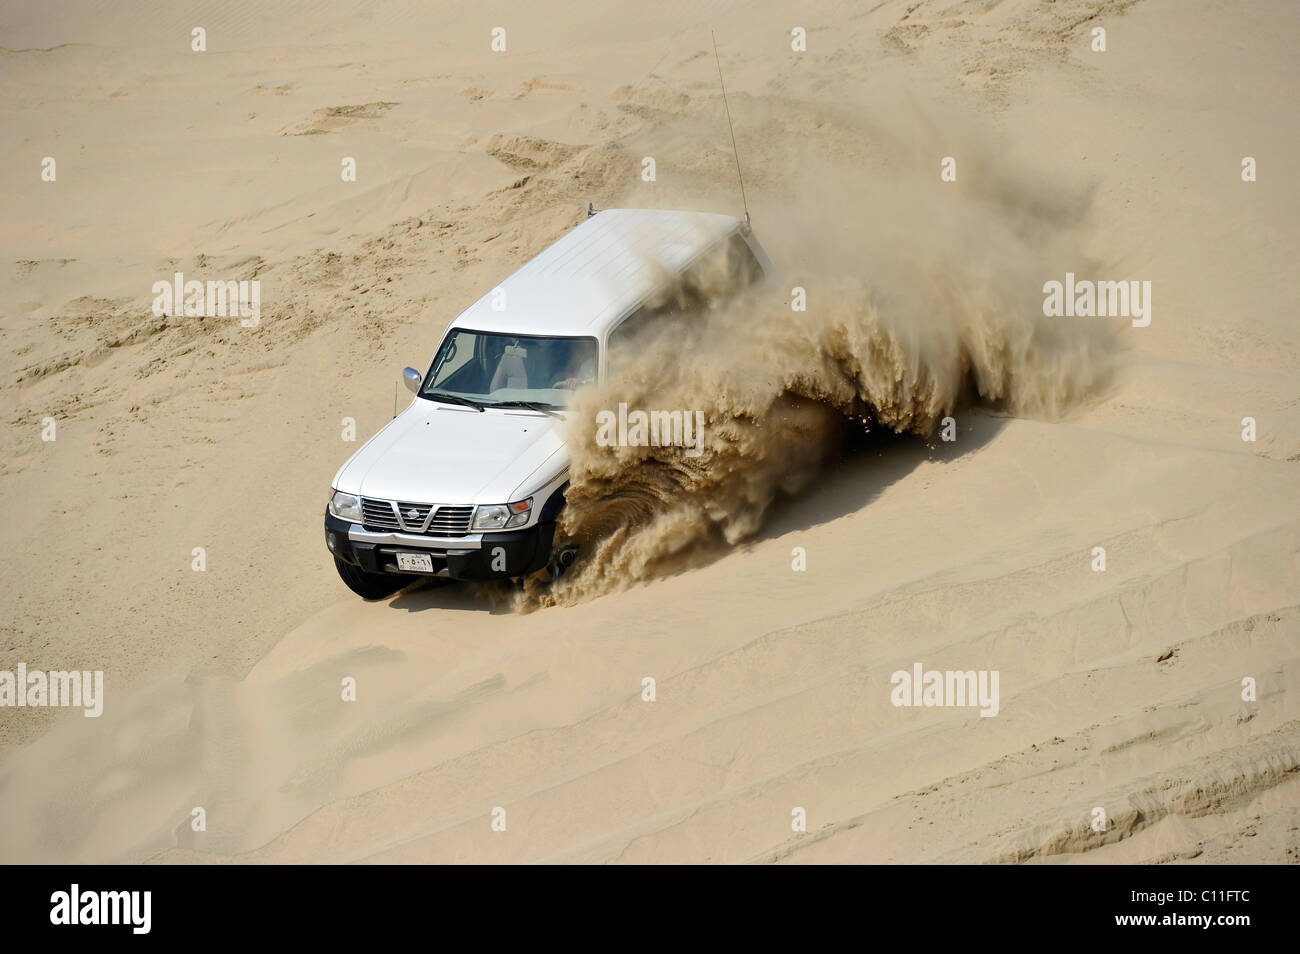 Geplatzten Reifen von einem Offroader 4500 Nissan Patrol 4500 Kraftstoffeinspritzung 4 x 4, Sanddünen, Emirat Katar, Persischen Golf fahren Stockfoto